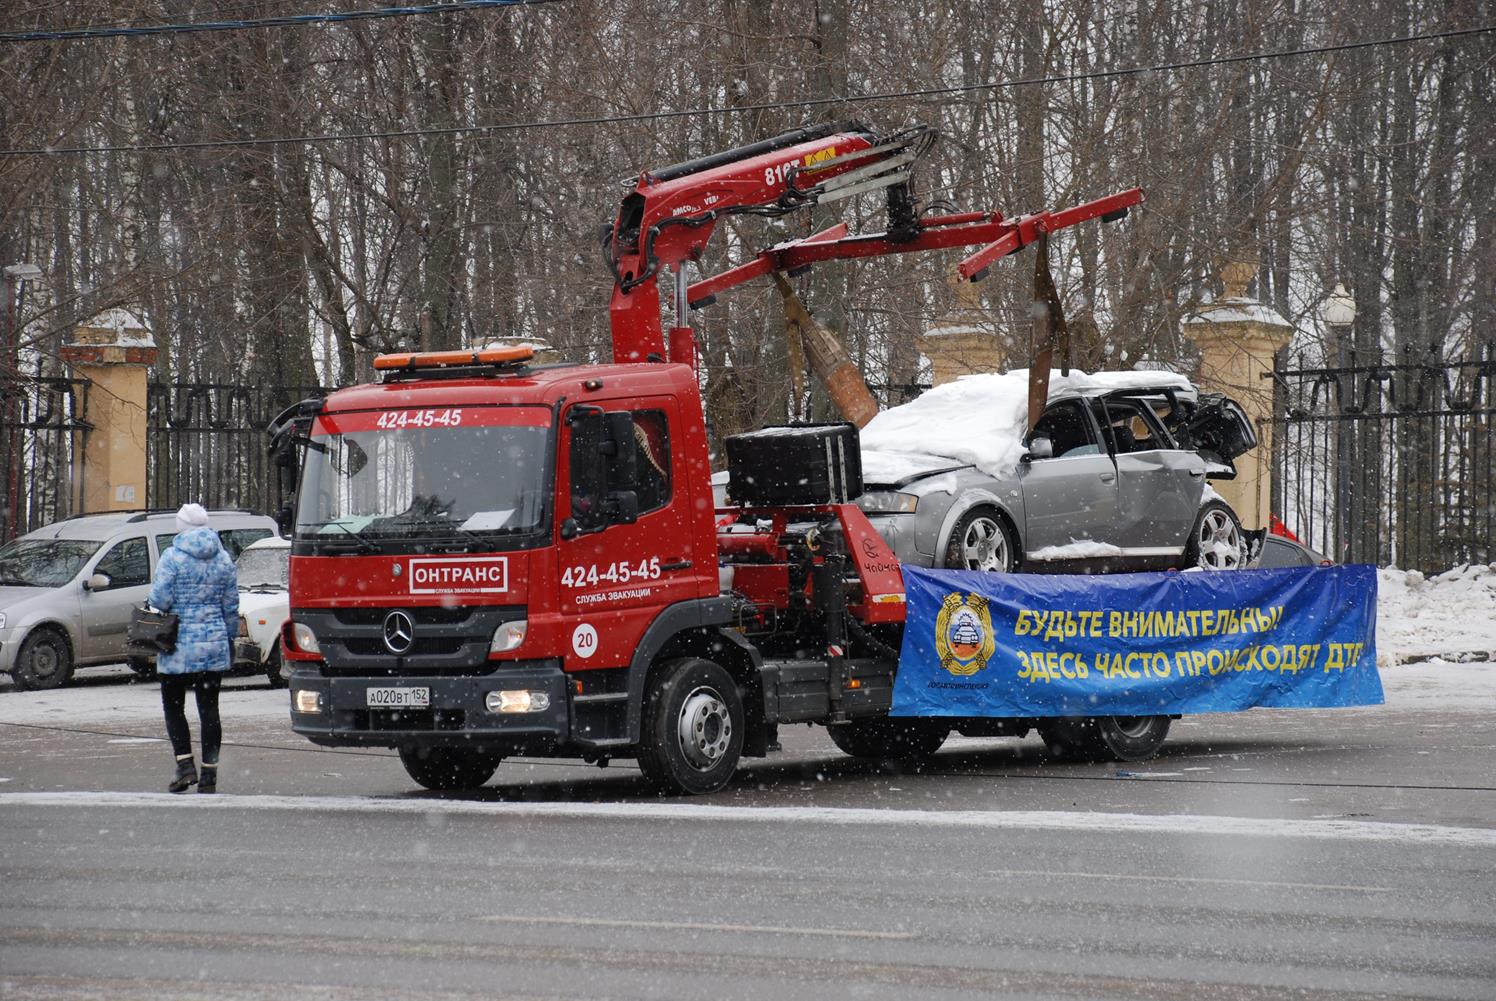 Разбитые автомобили напомнят нижегородцам о самых опасных участках дорог - фото 1